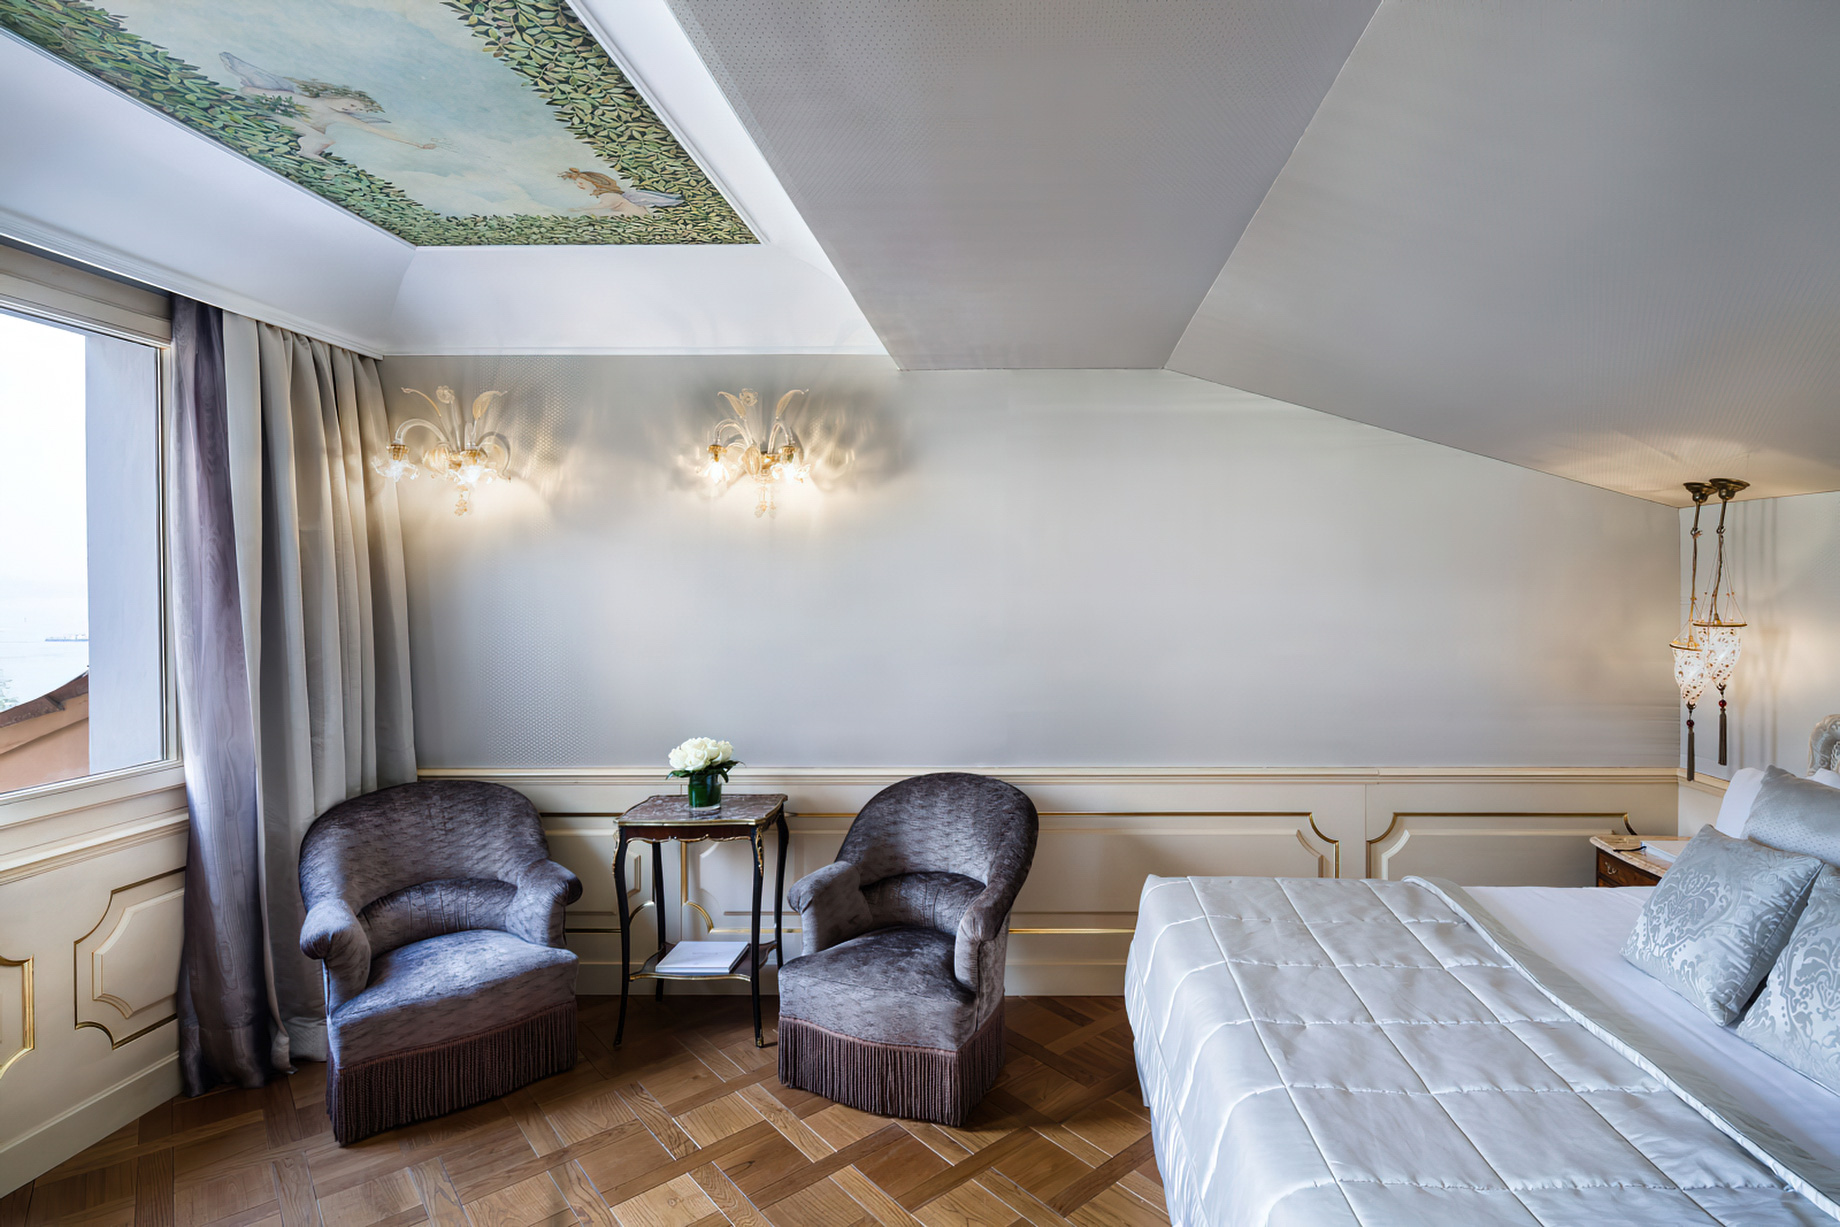 Baglioni Hotel Luna, Venezia – Venice, Italy – Lagoon View Suite Bedroom